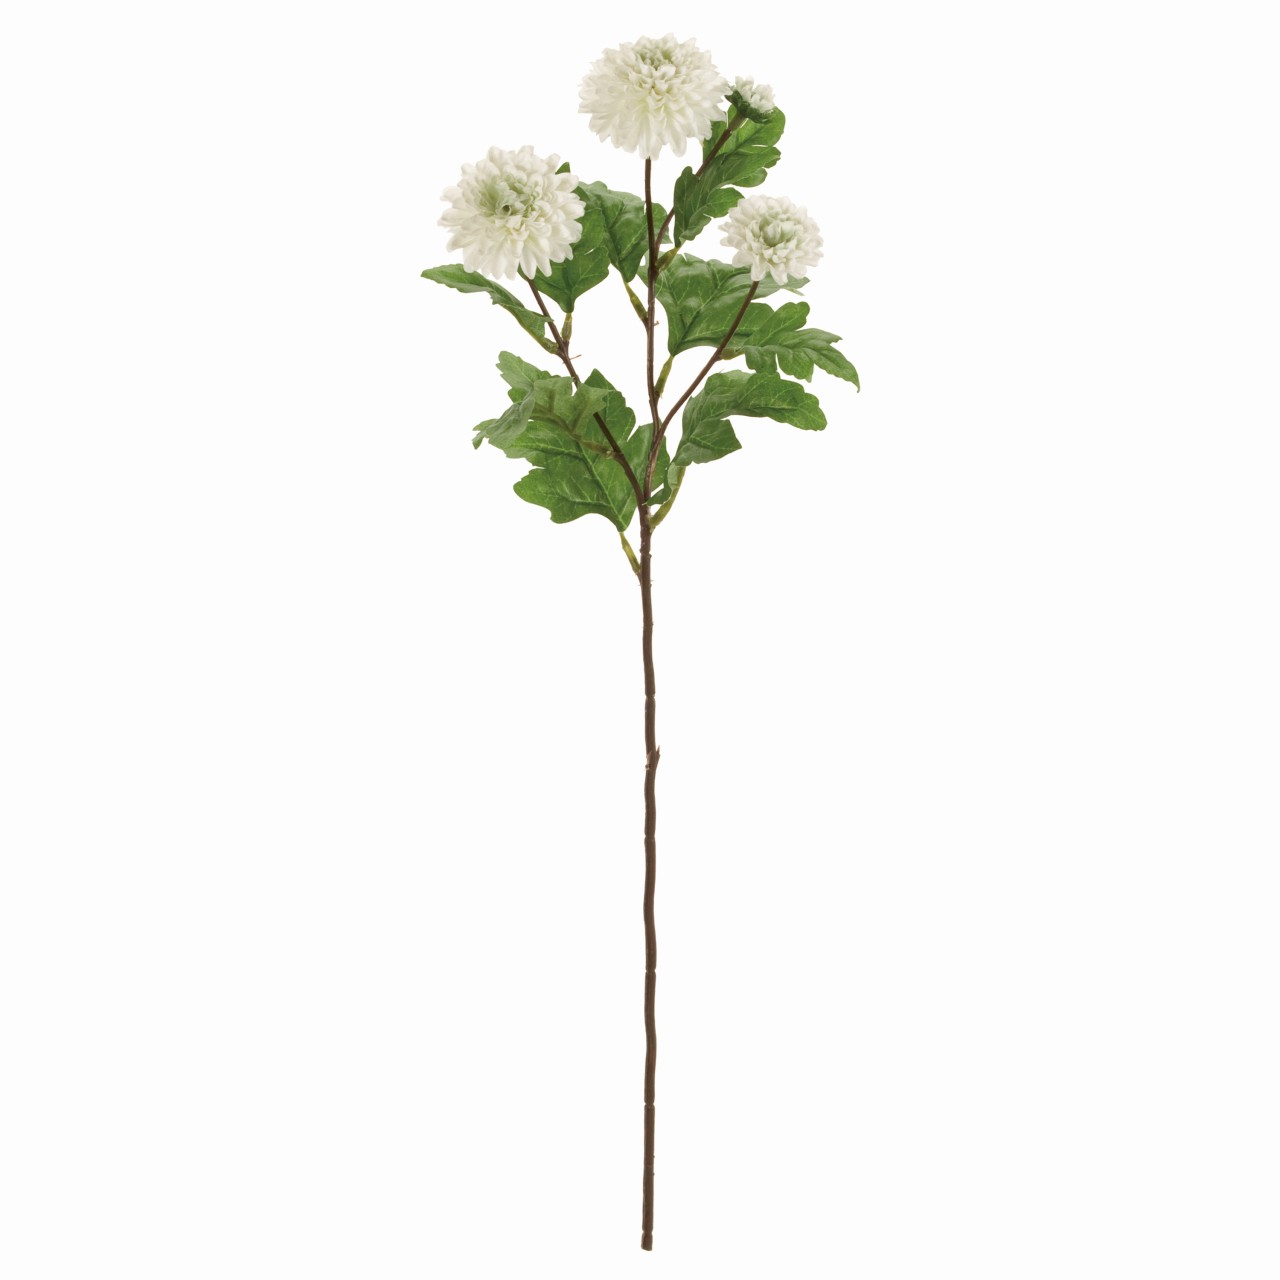 マイフラ 通販 Magiq ロワールマムスプレー ホワイトグリーン アーティフィシャルフラワー 造花 Fm 001 マム 菊 ホワイト グリーン Magiq アーティフィシャルフラワー 造花 全国にmagiq 花器 花資材などをお届けします